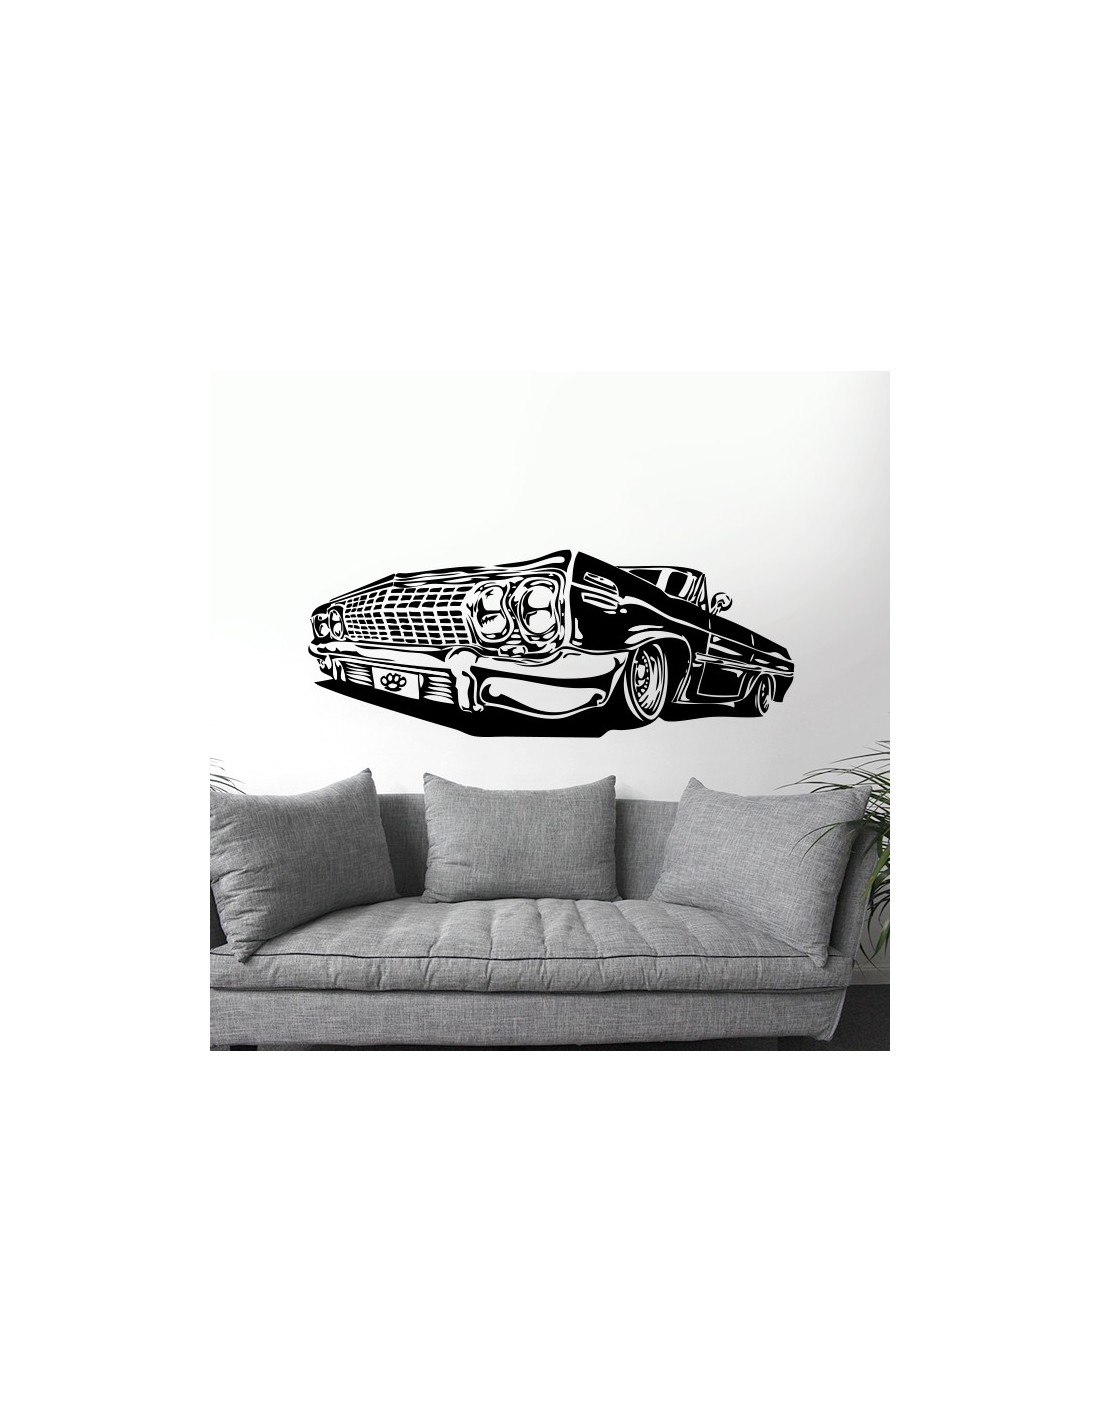 Le Saint stickman autocollant autocollant autocollant porte murale voiture  van vélo démoniaque décoration de la maison -  France